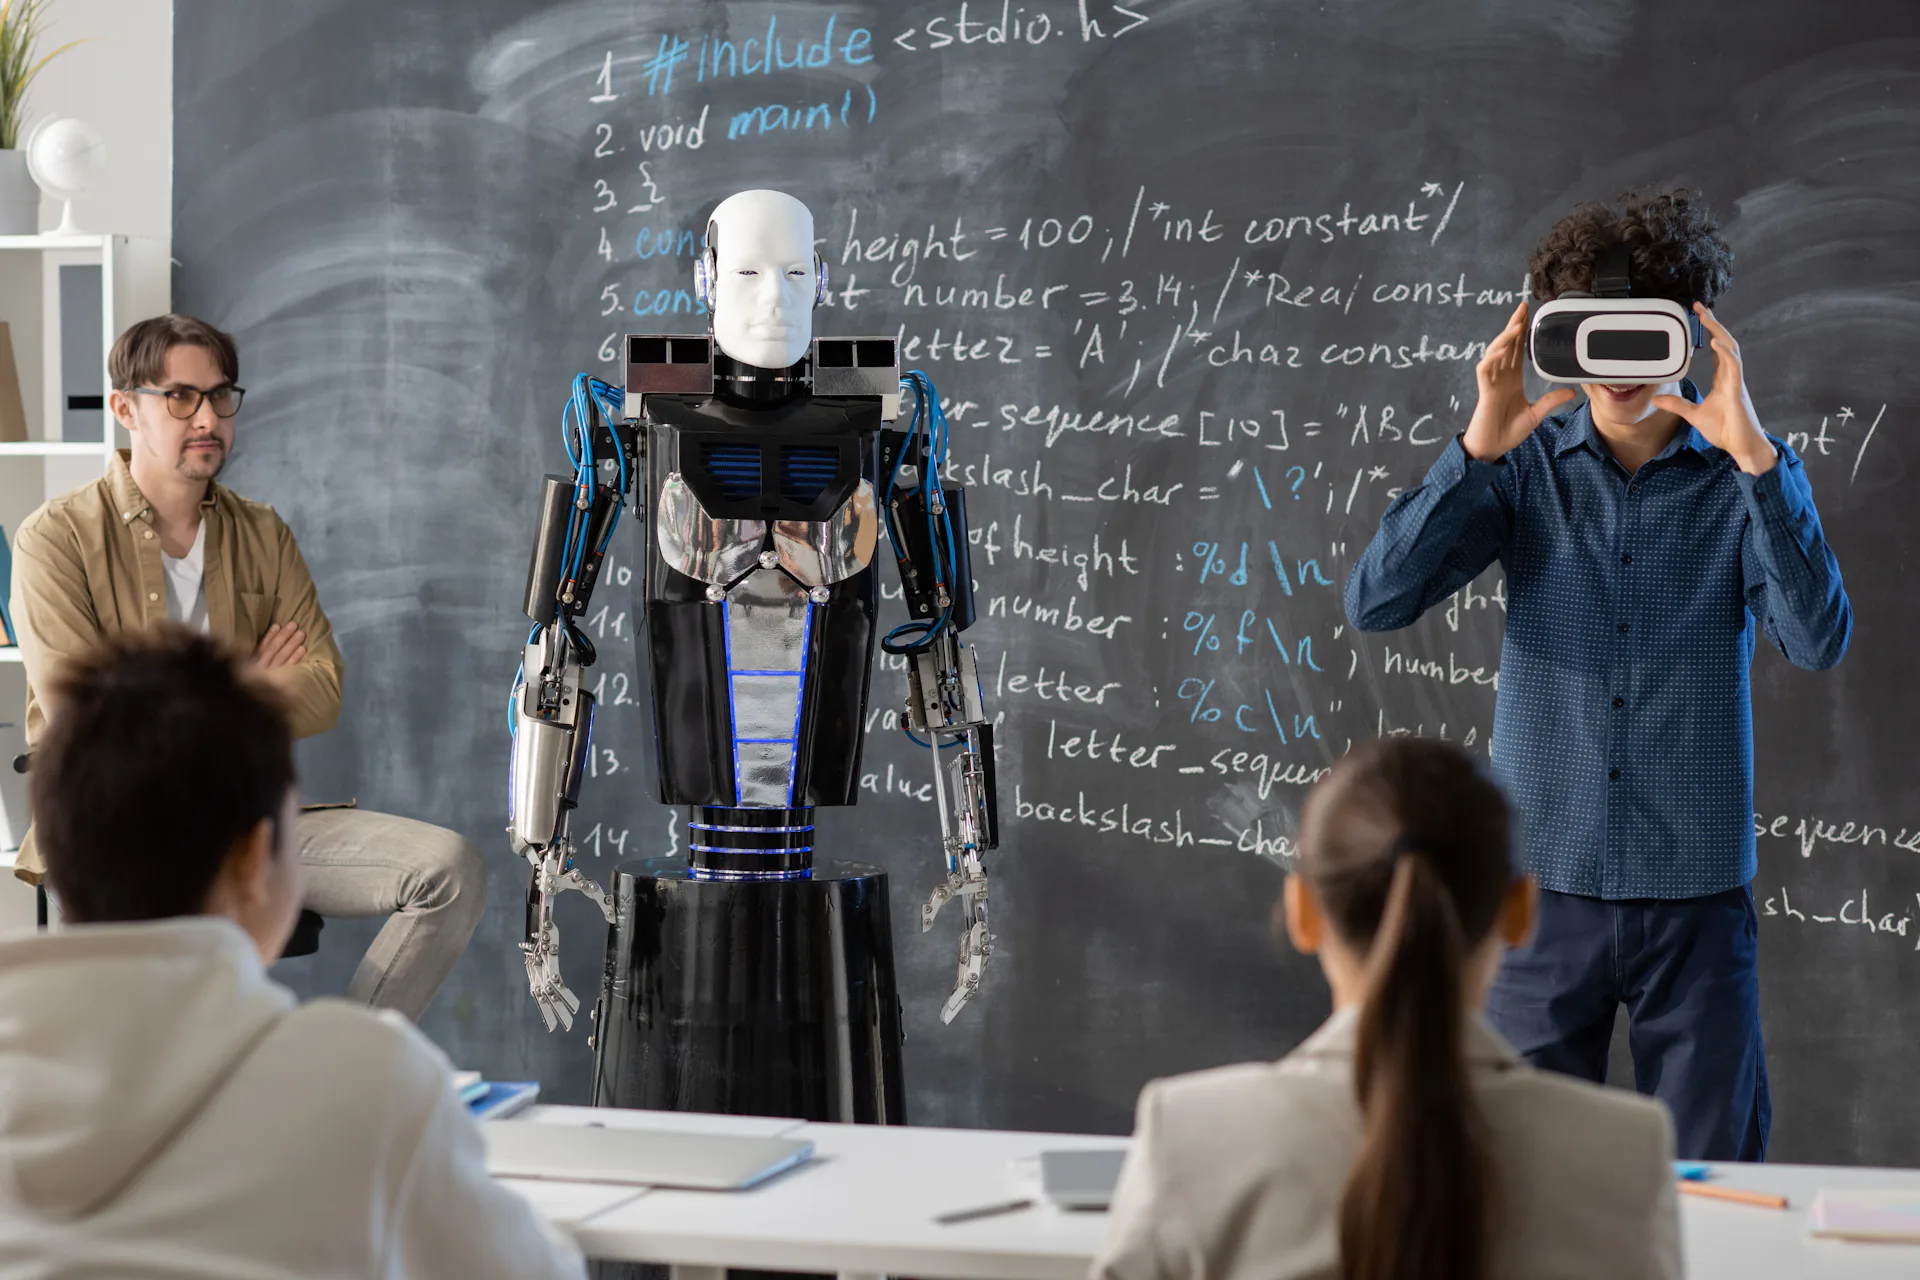 Na imagem, um robô está sendo construído por alunos sob supervisão de um professor.  